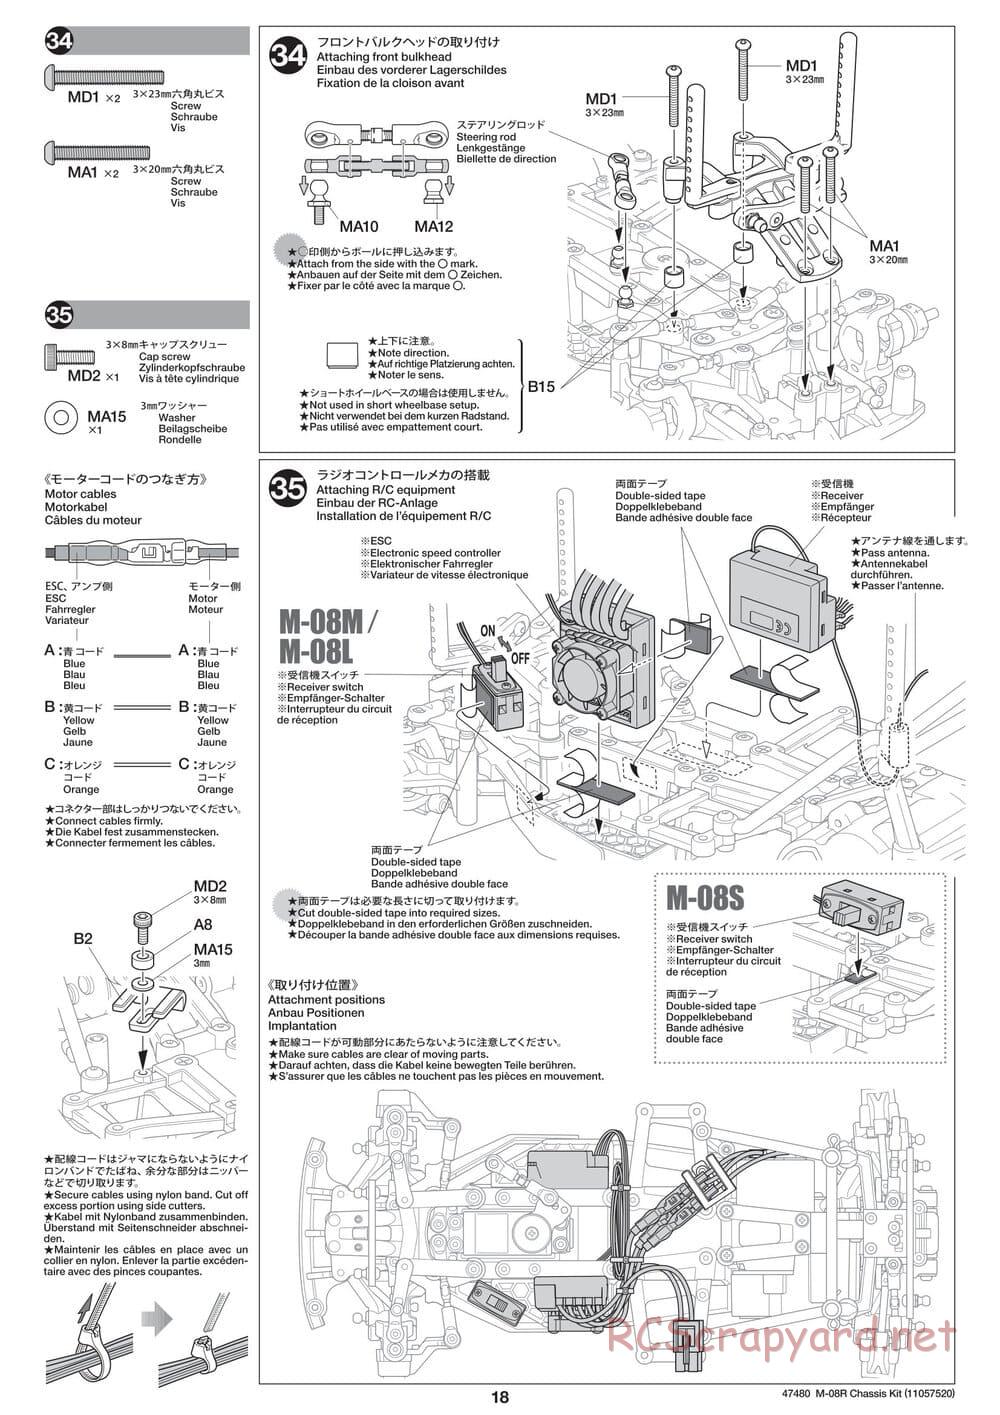 Tamiya - M-08R Chassis - Manual - Page 18